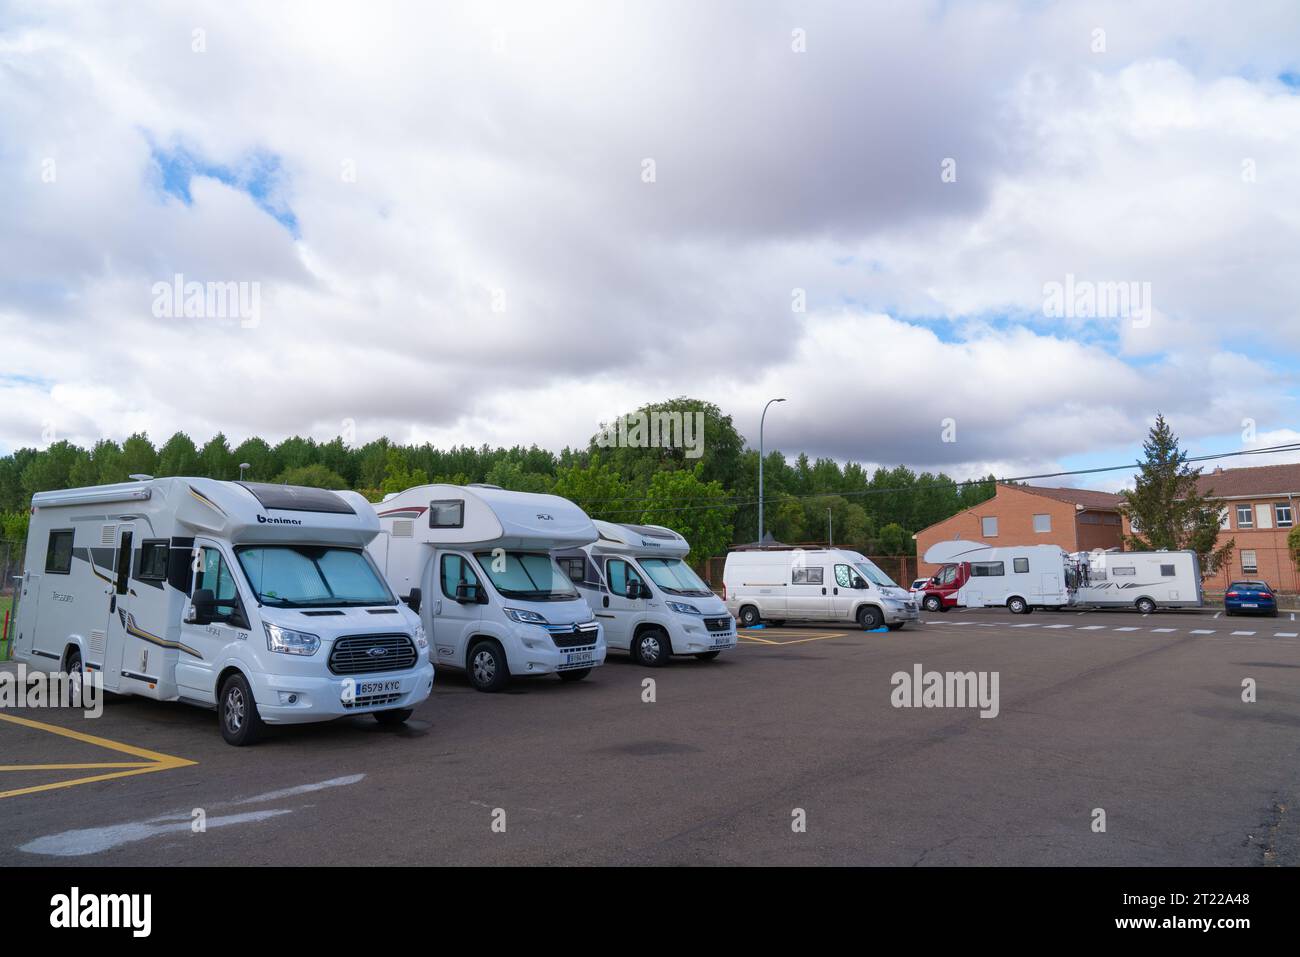 Caravan Parking El Verger and Benidorm - Motorhome Parking in